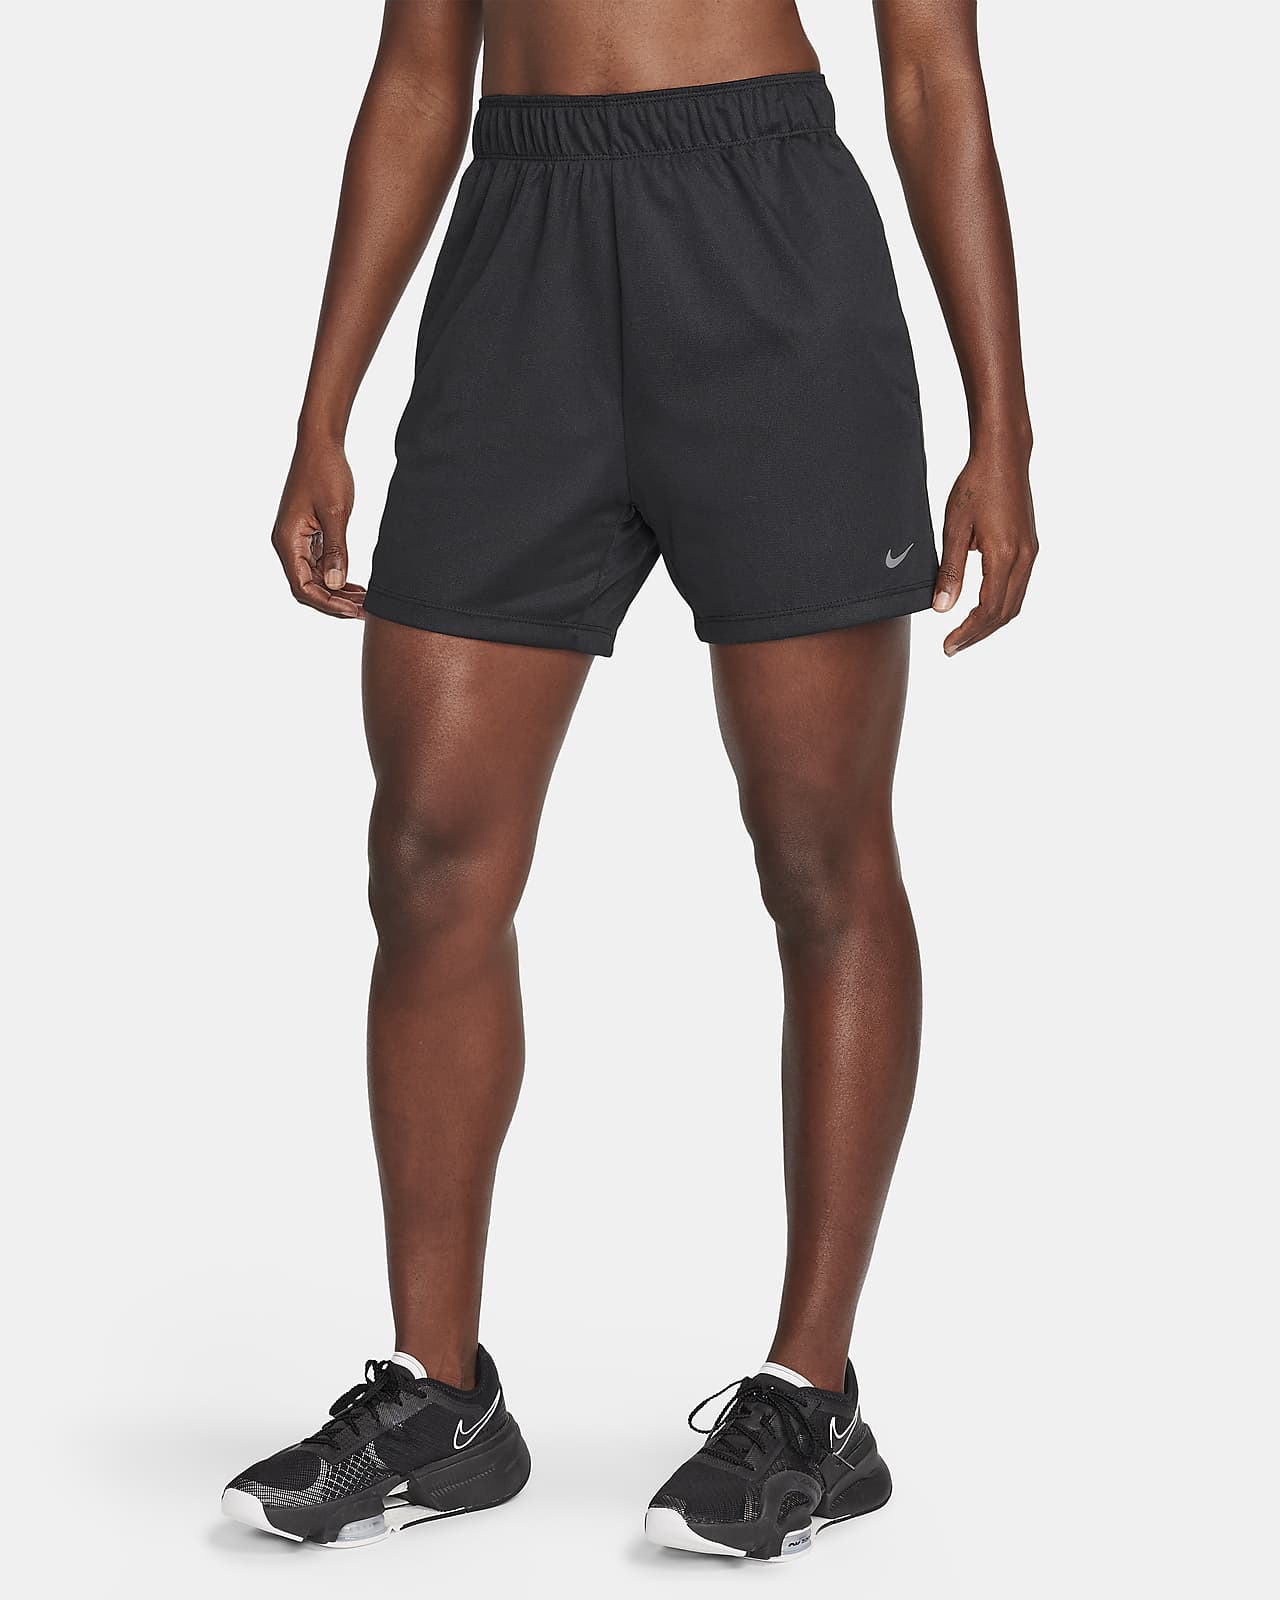 Shorts fitness Dri-FIT non foderati a vita media 13 cm Nike Attack – Donna